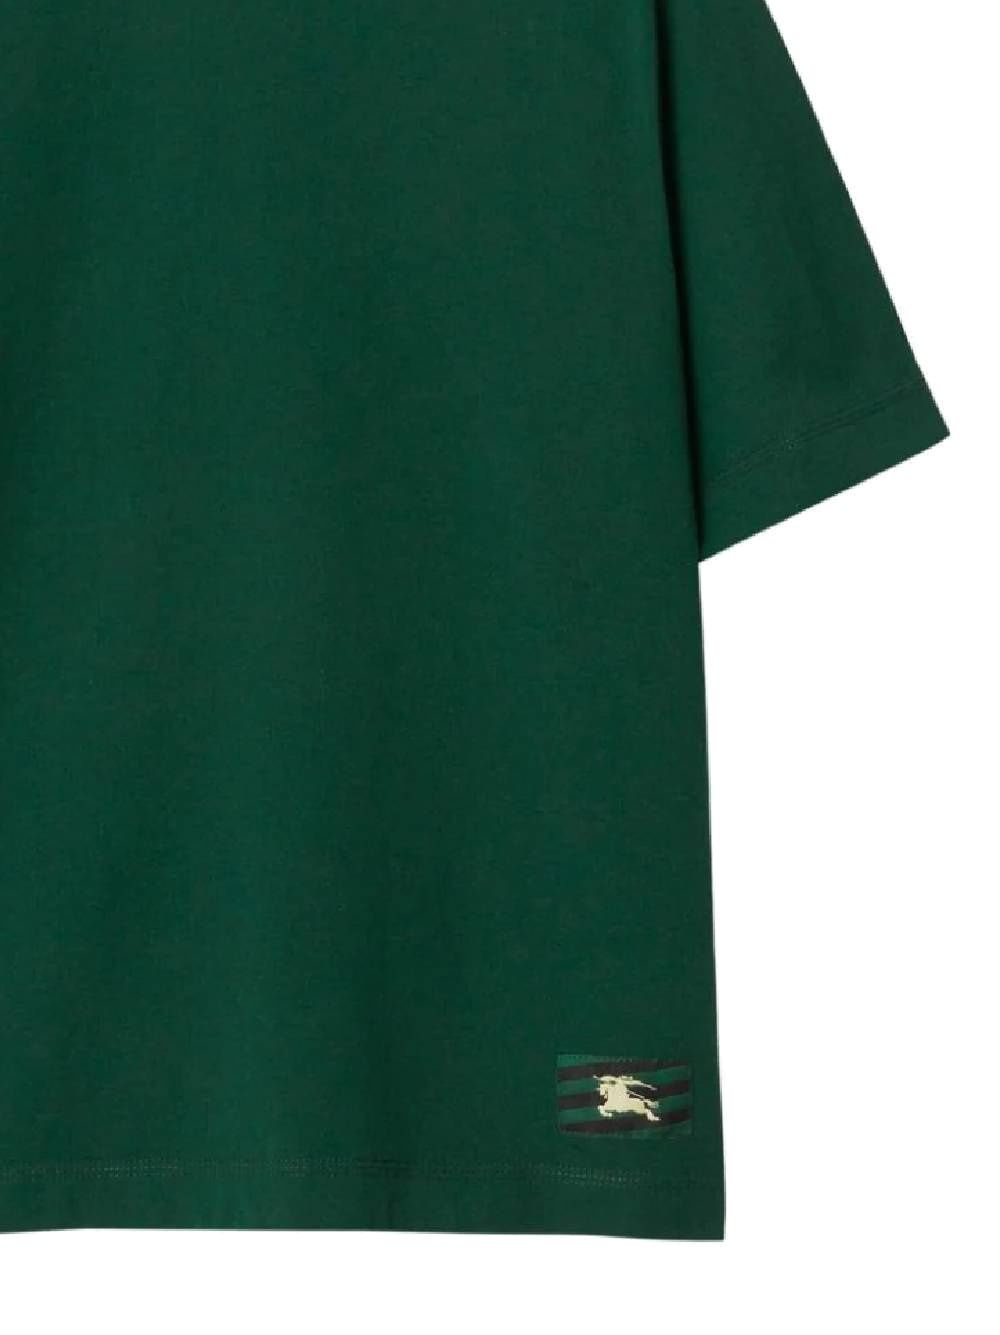 green cotton jersey texture